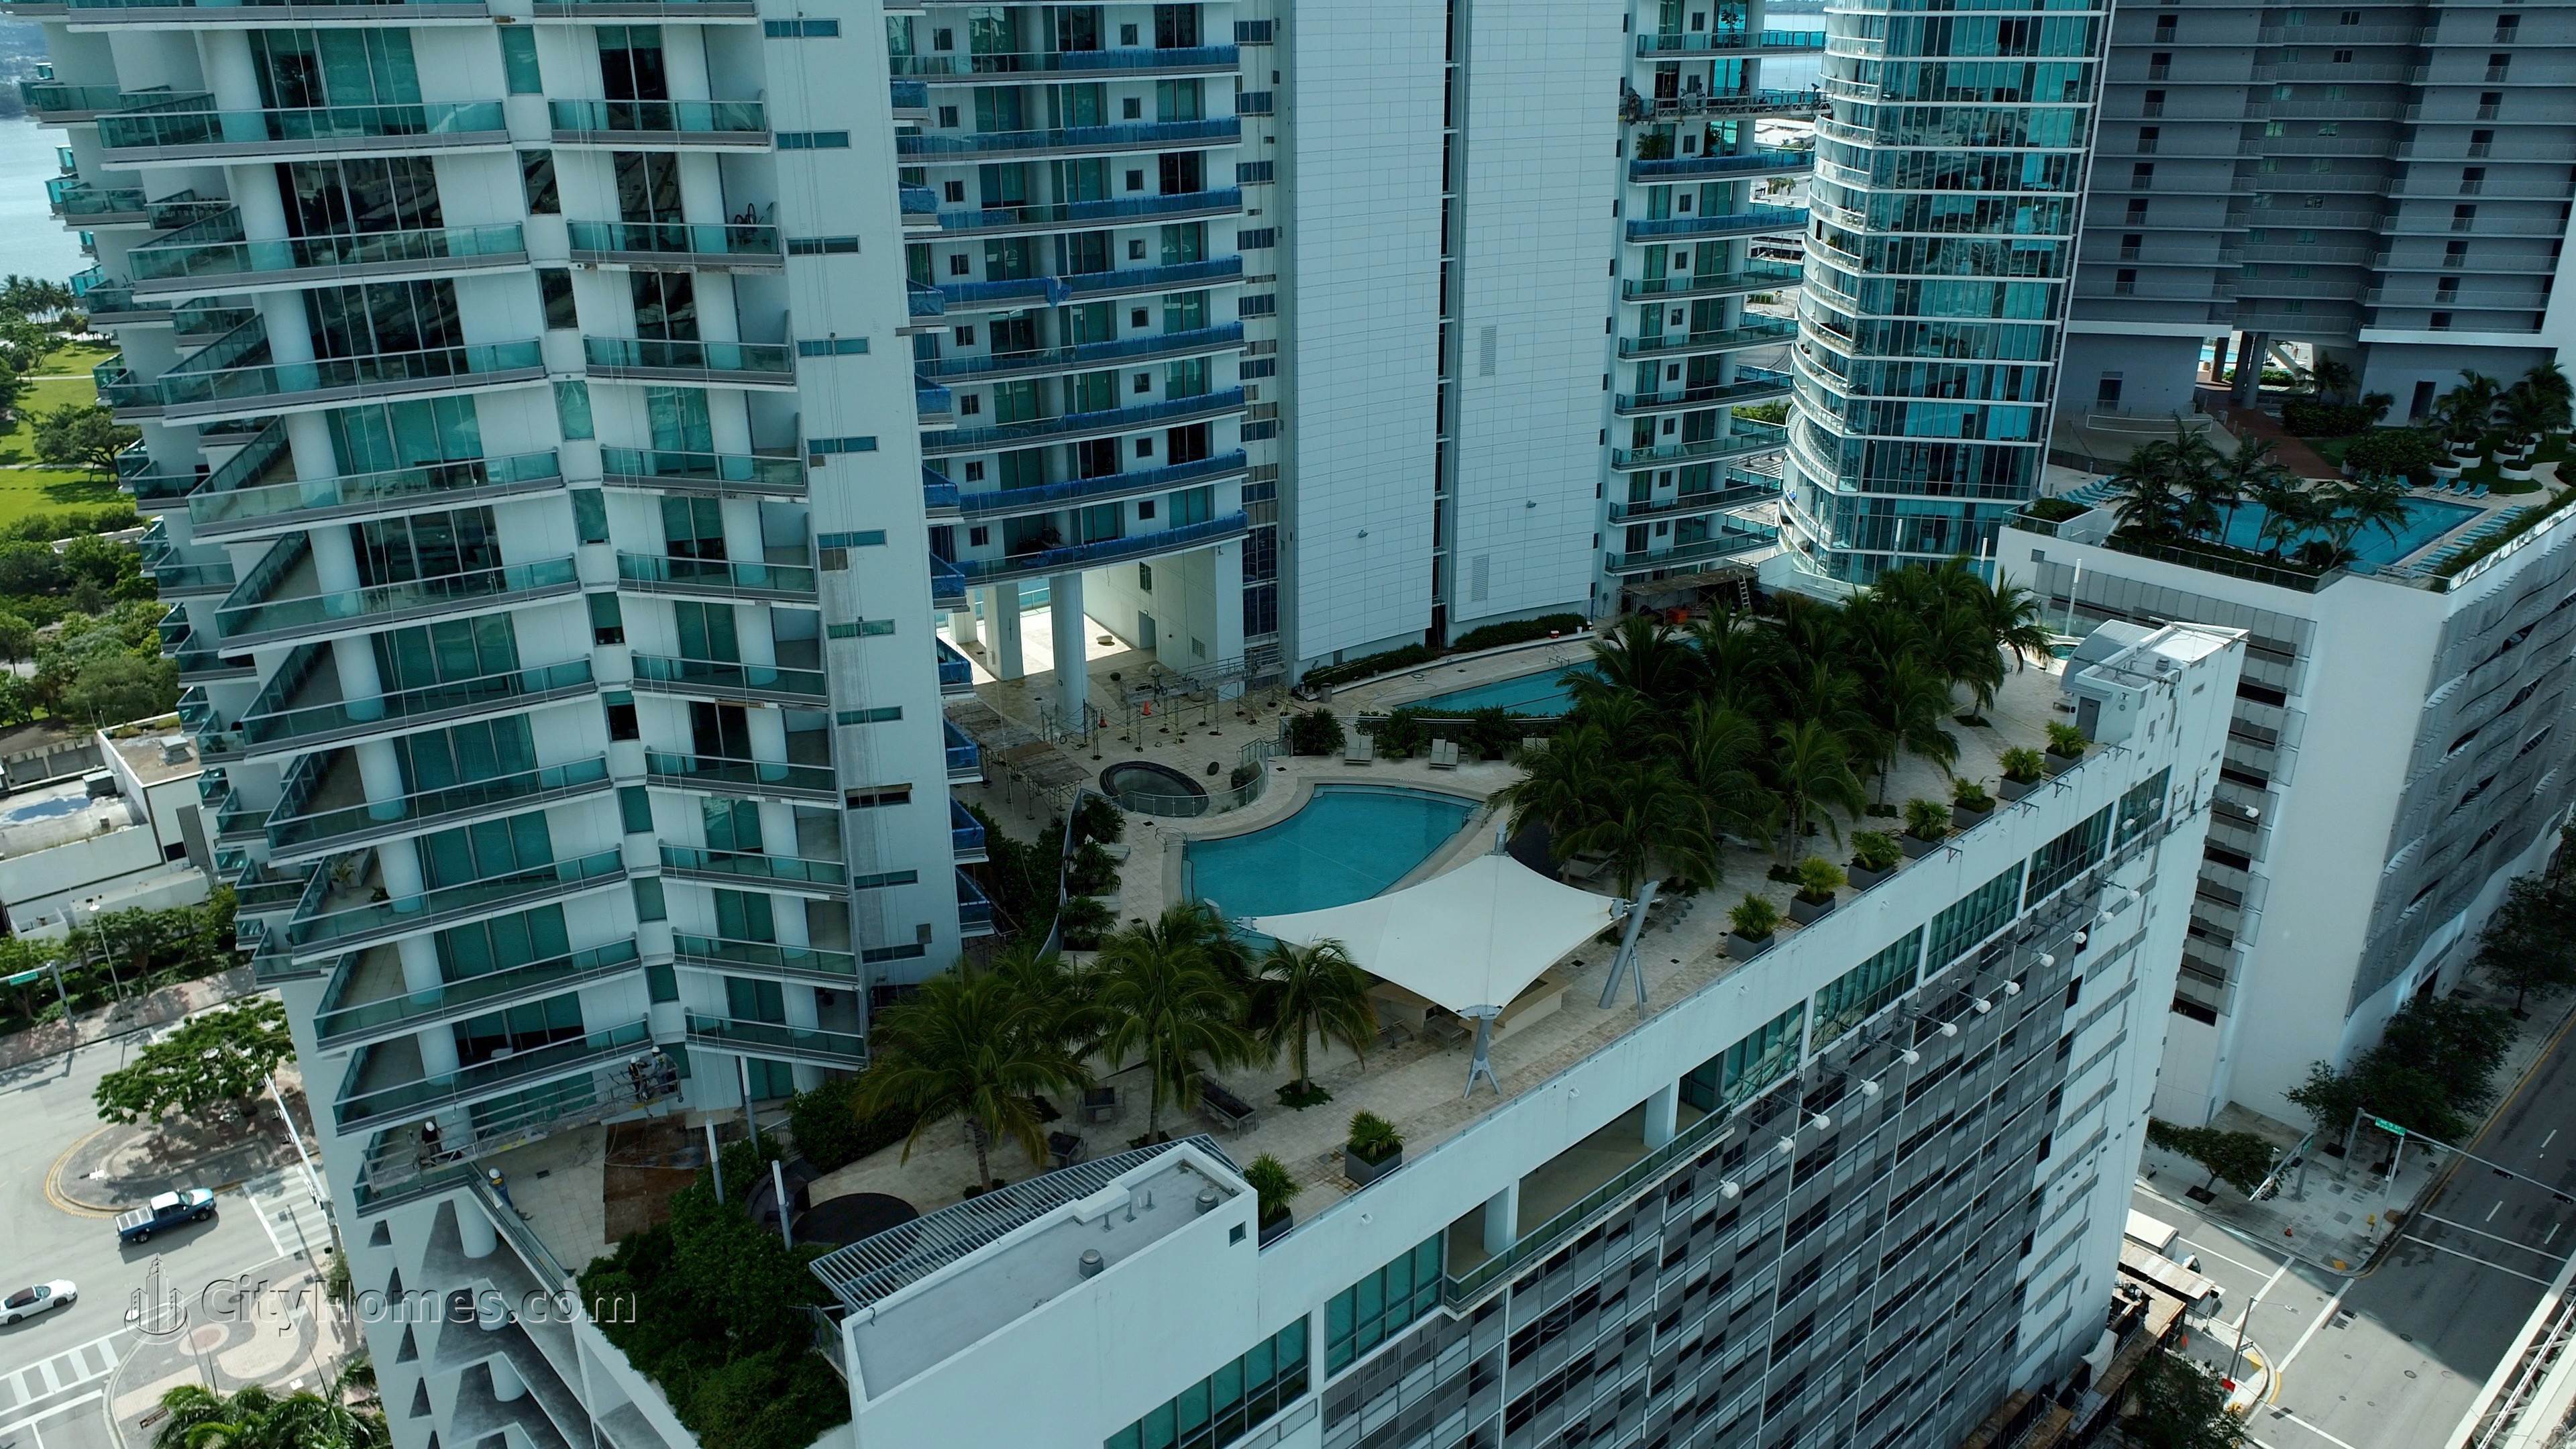 5. 900 Biscayne Bay edificio en 900 Biscayne Boulevard, Miami, FL 33132